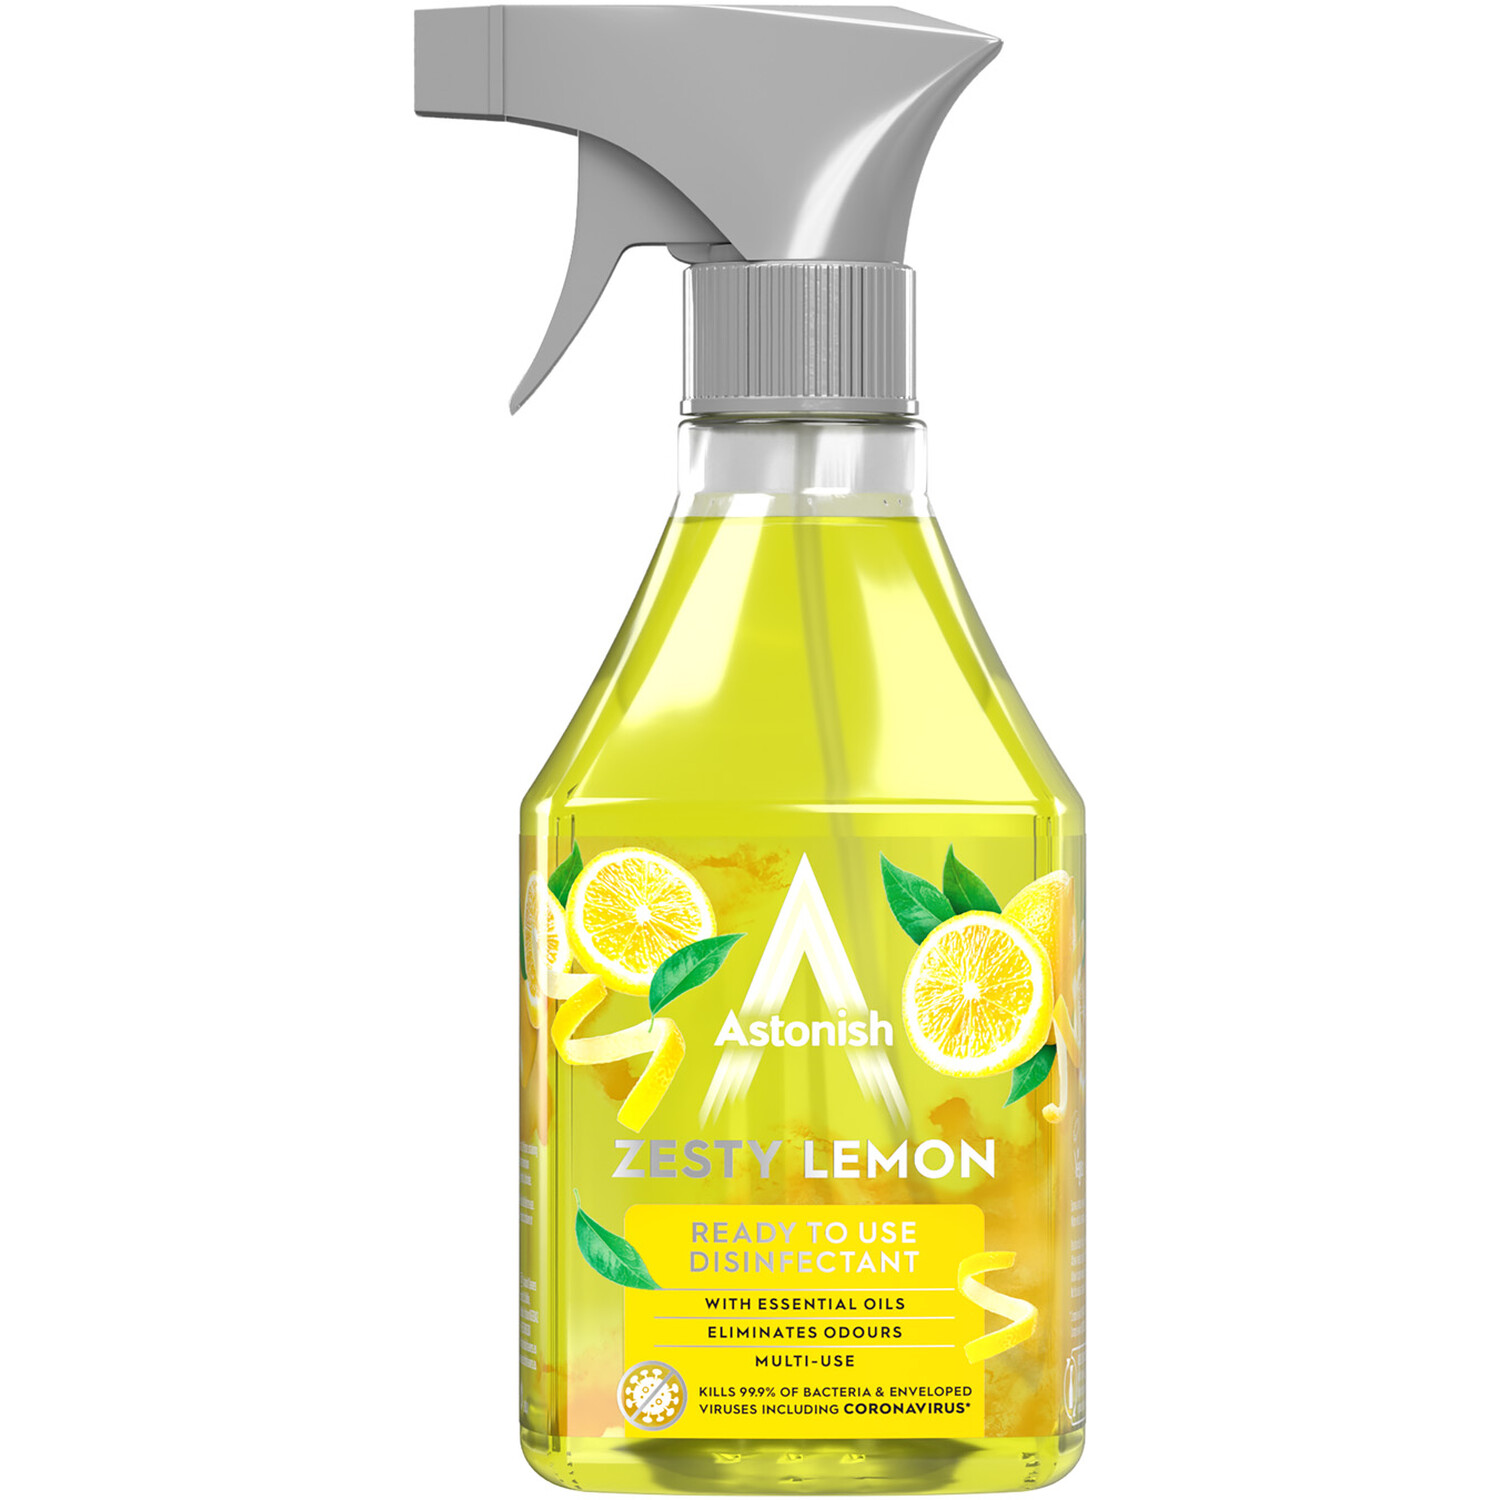 Astonish Zesty Lemon Ready to Use Disinfectant 550ml Image